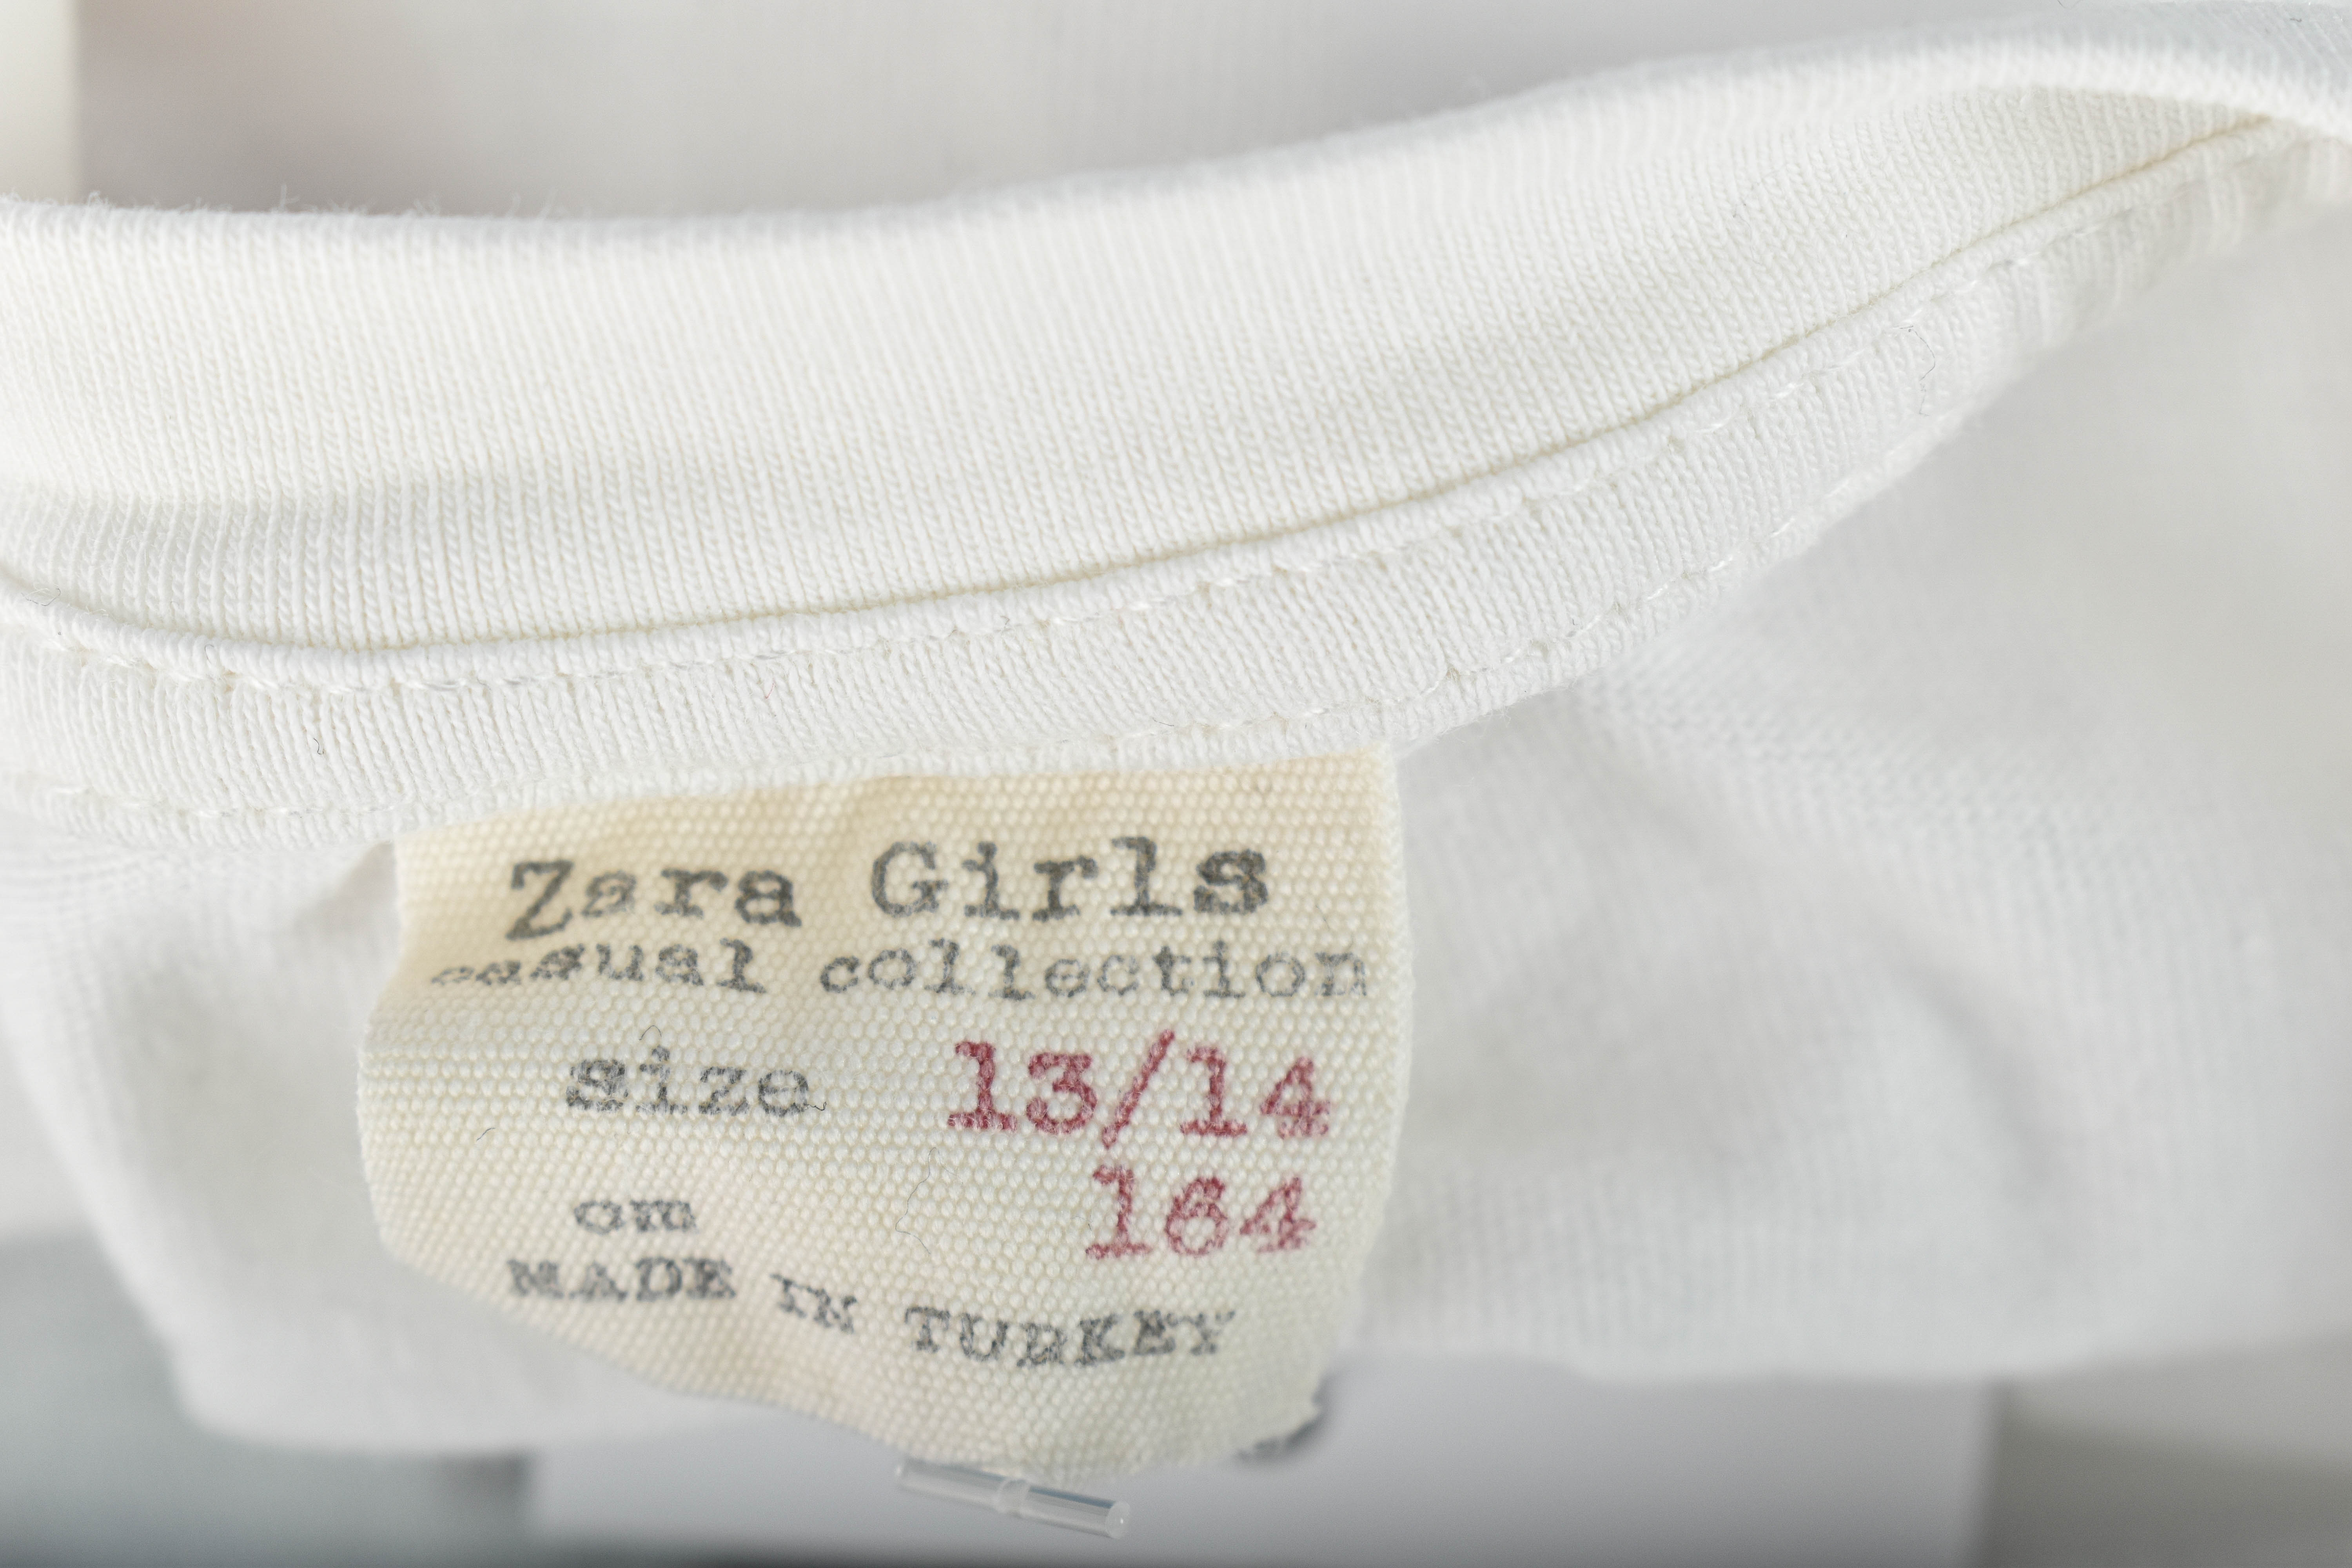 Koszulka dla dziewczynki - ZARA Girls - 2